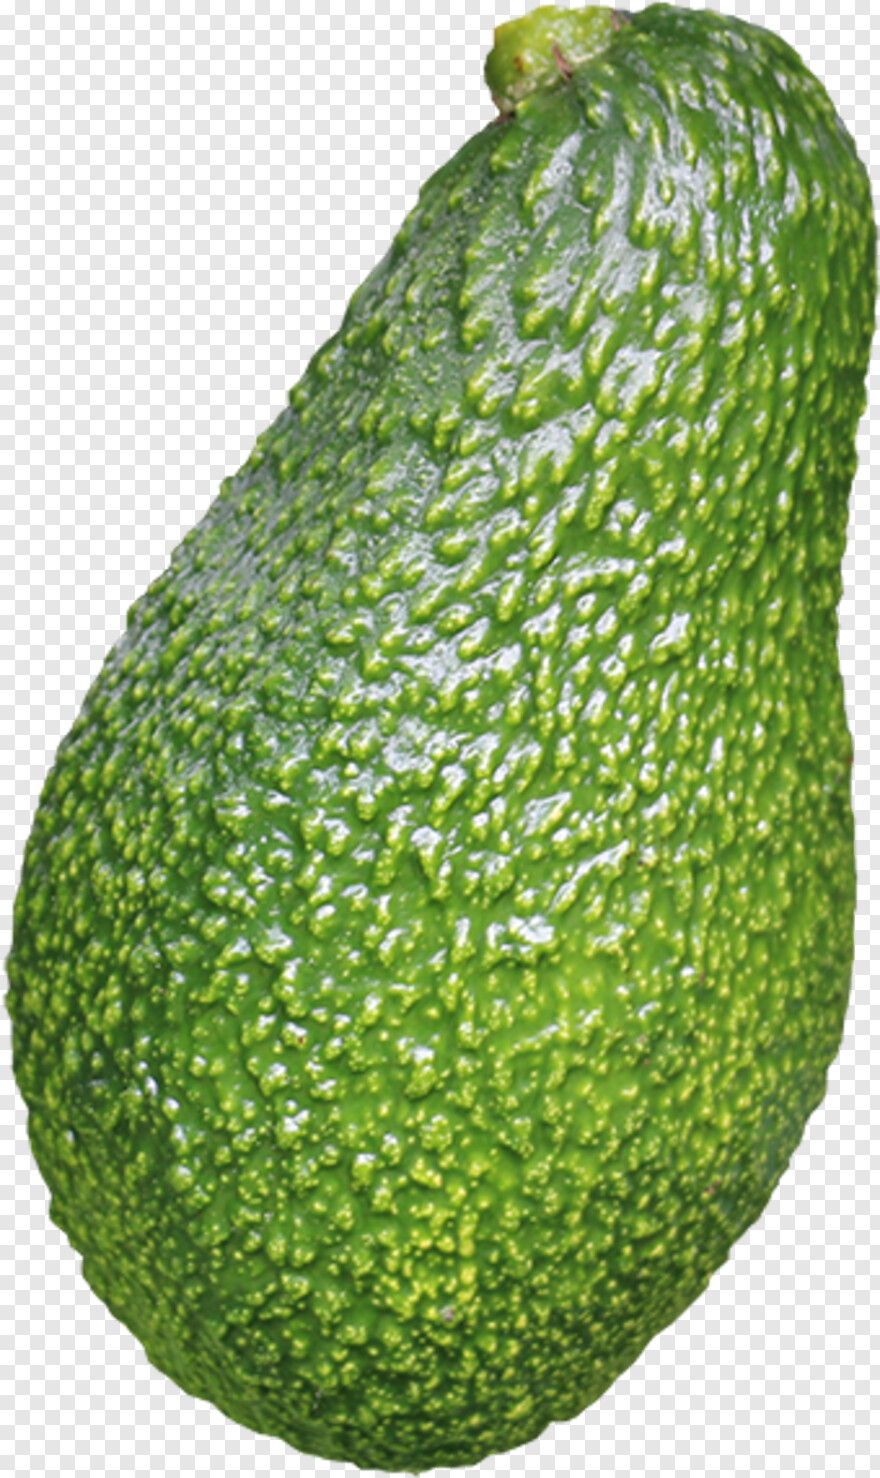 avocado # 440119